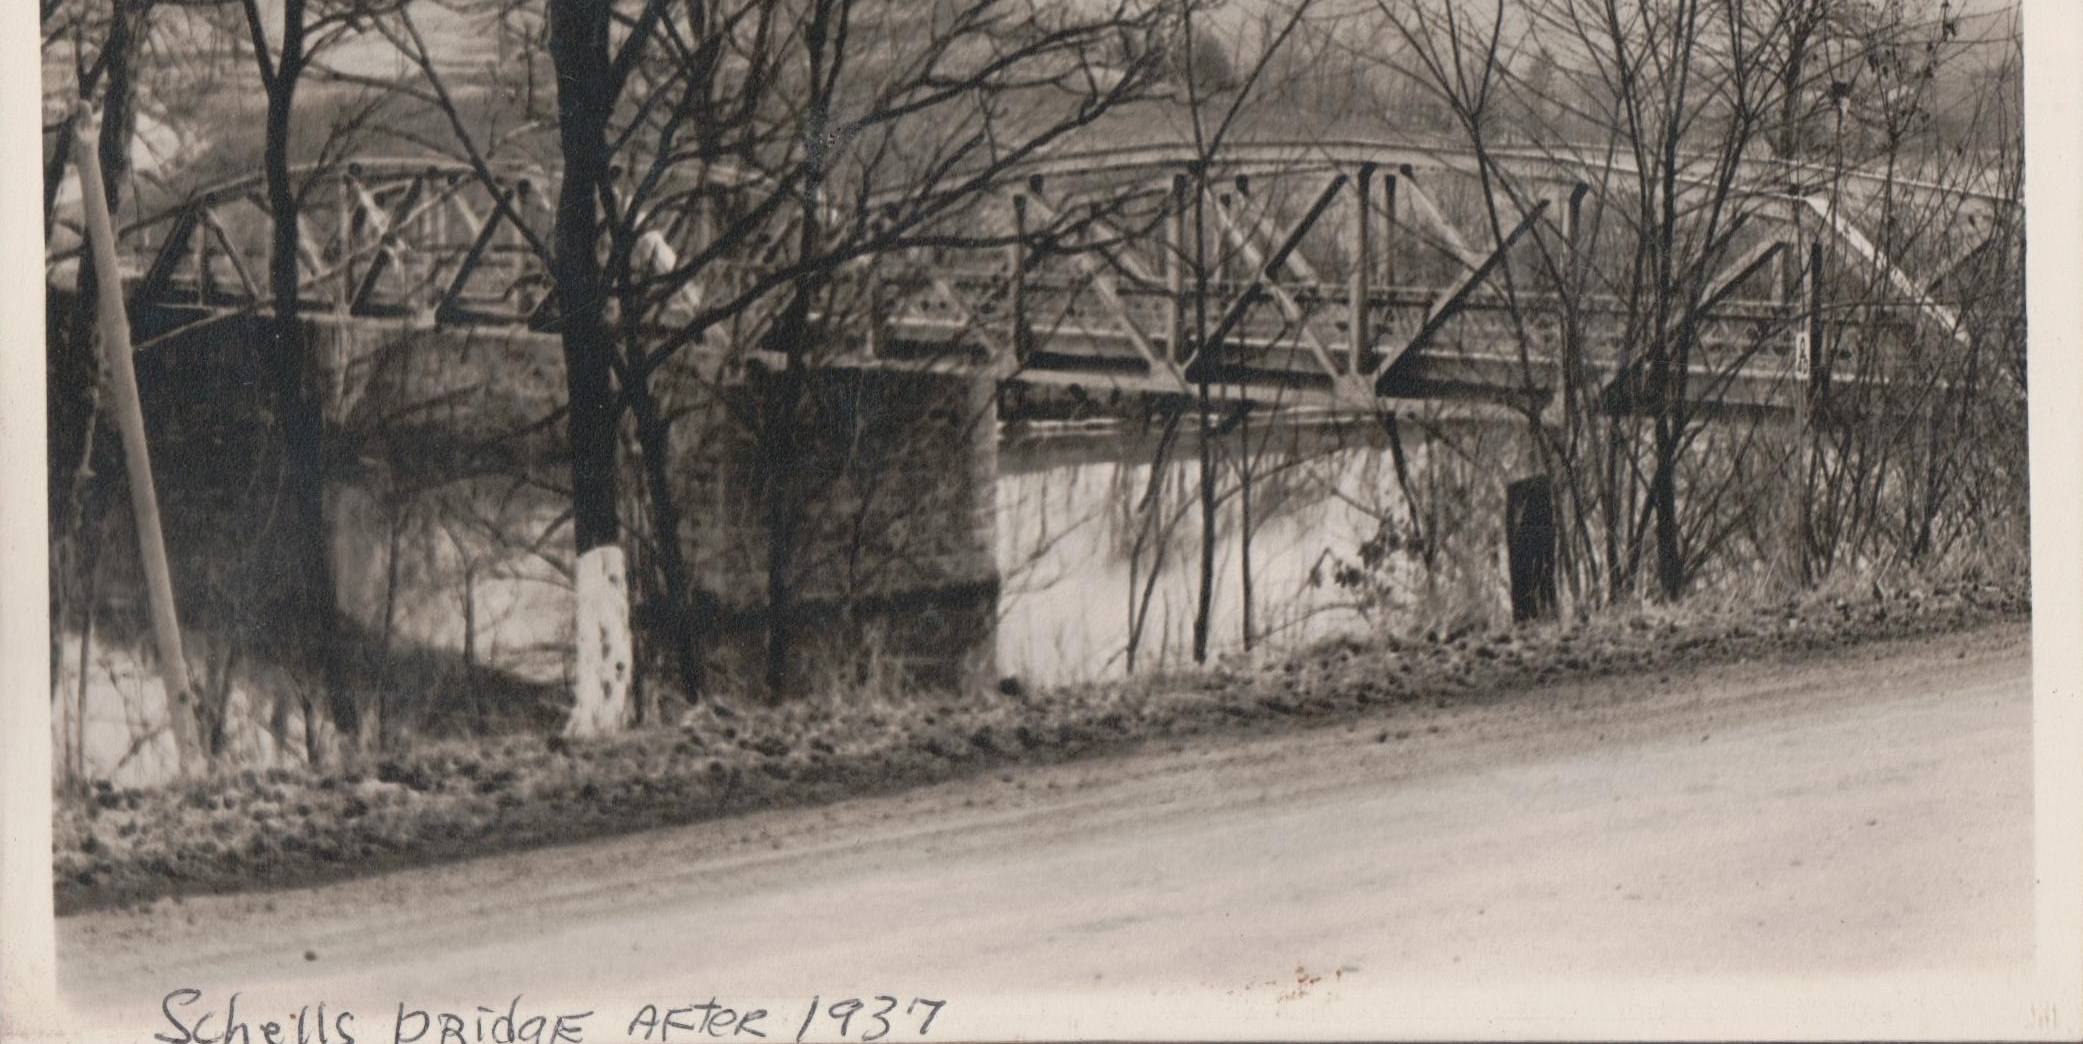 Schell's Bridge after 1937